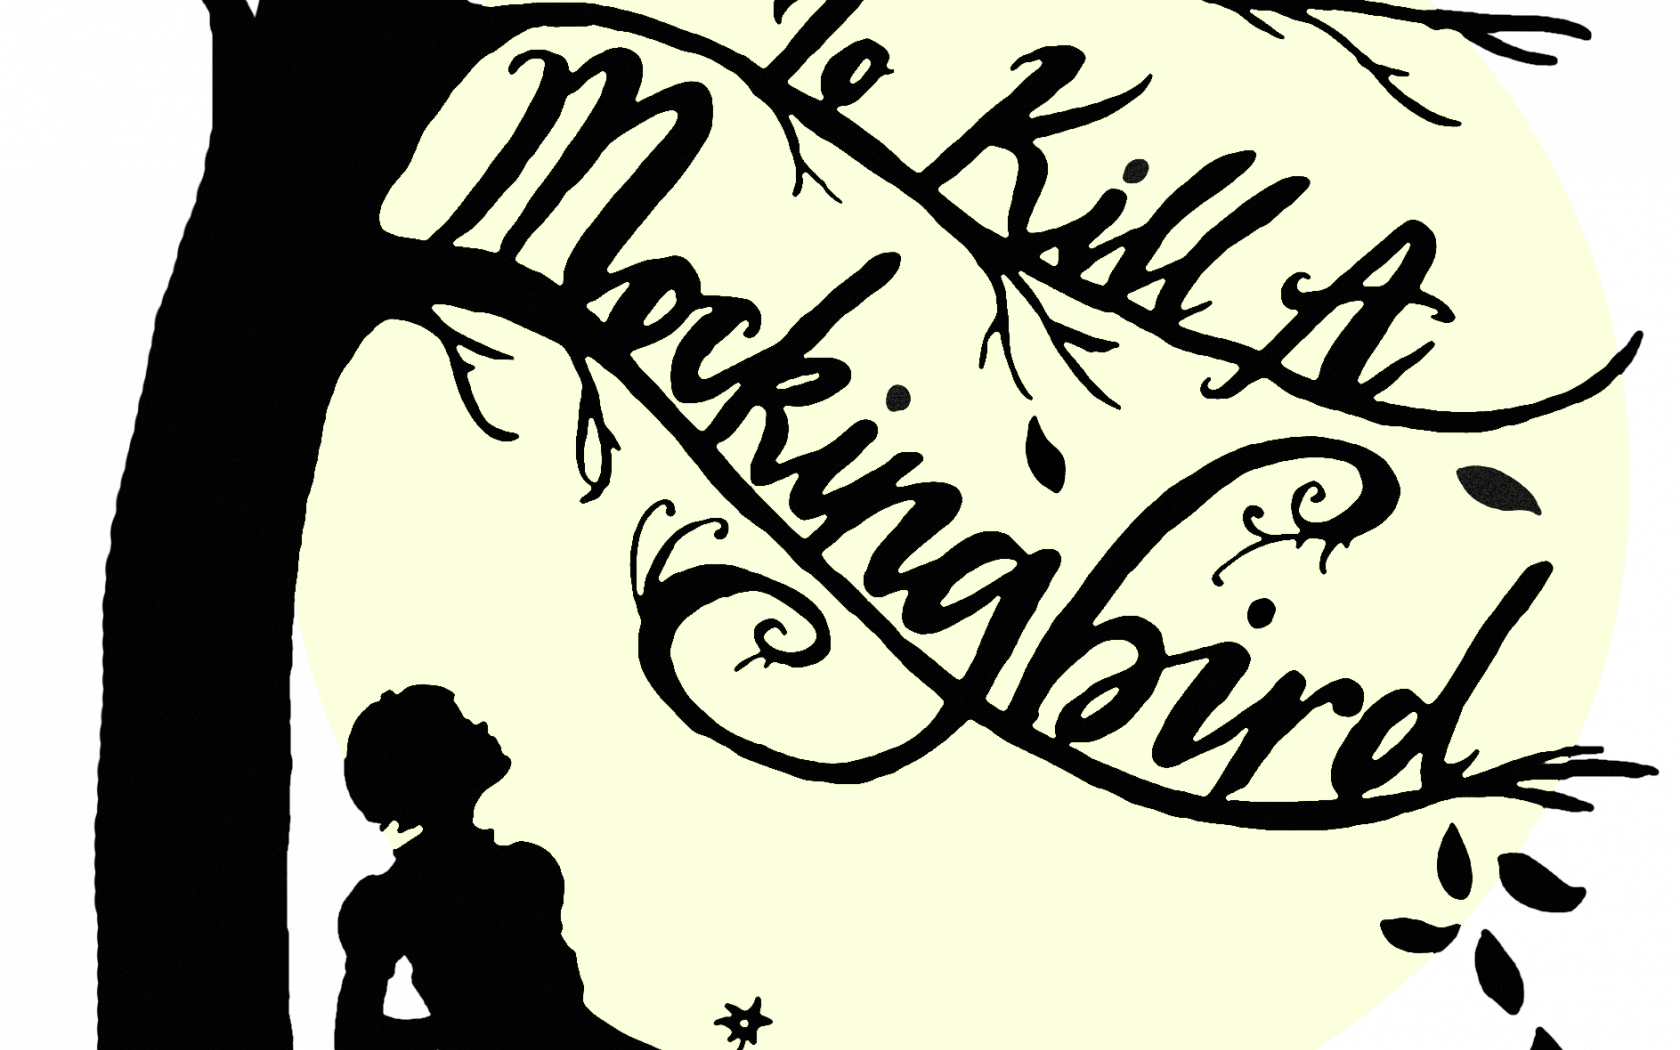 1887x2839px To Kill a Mockingbird Wallpaper